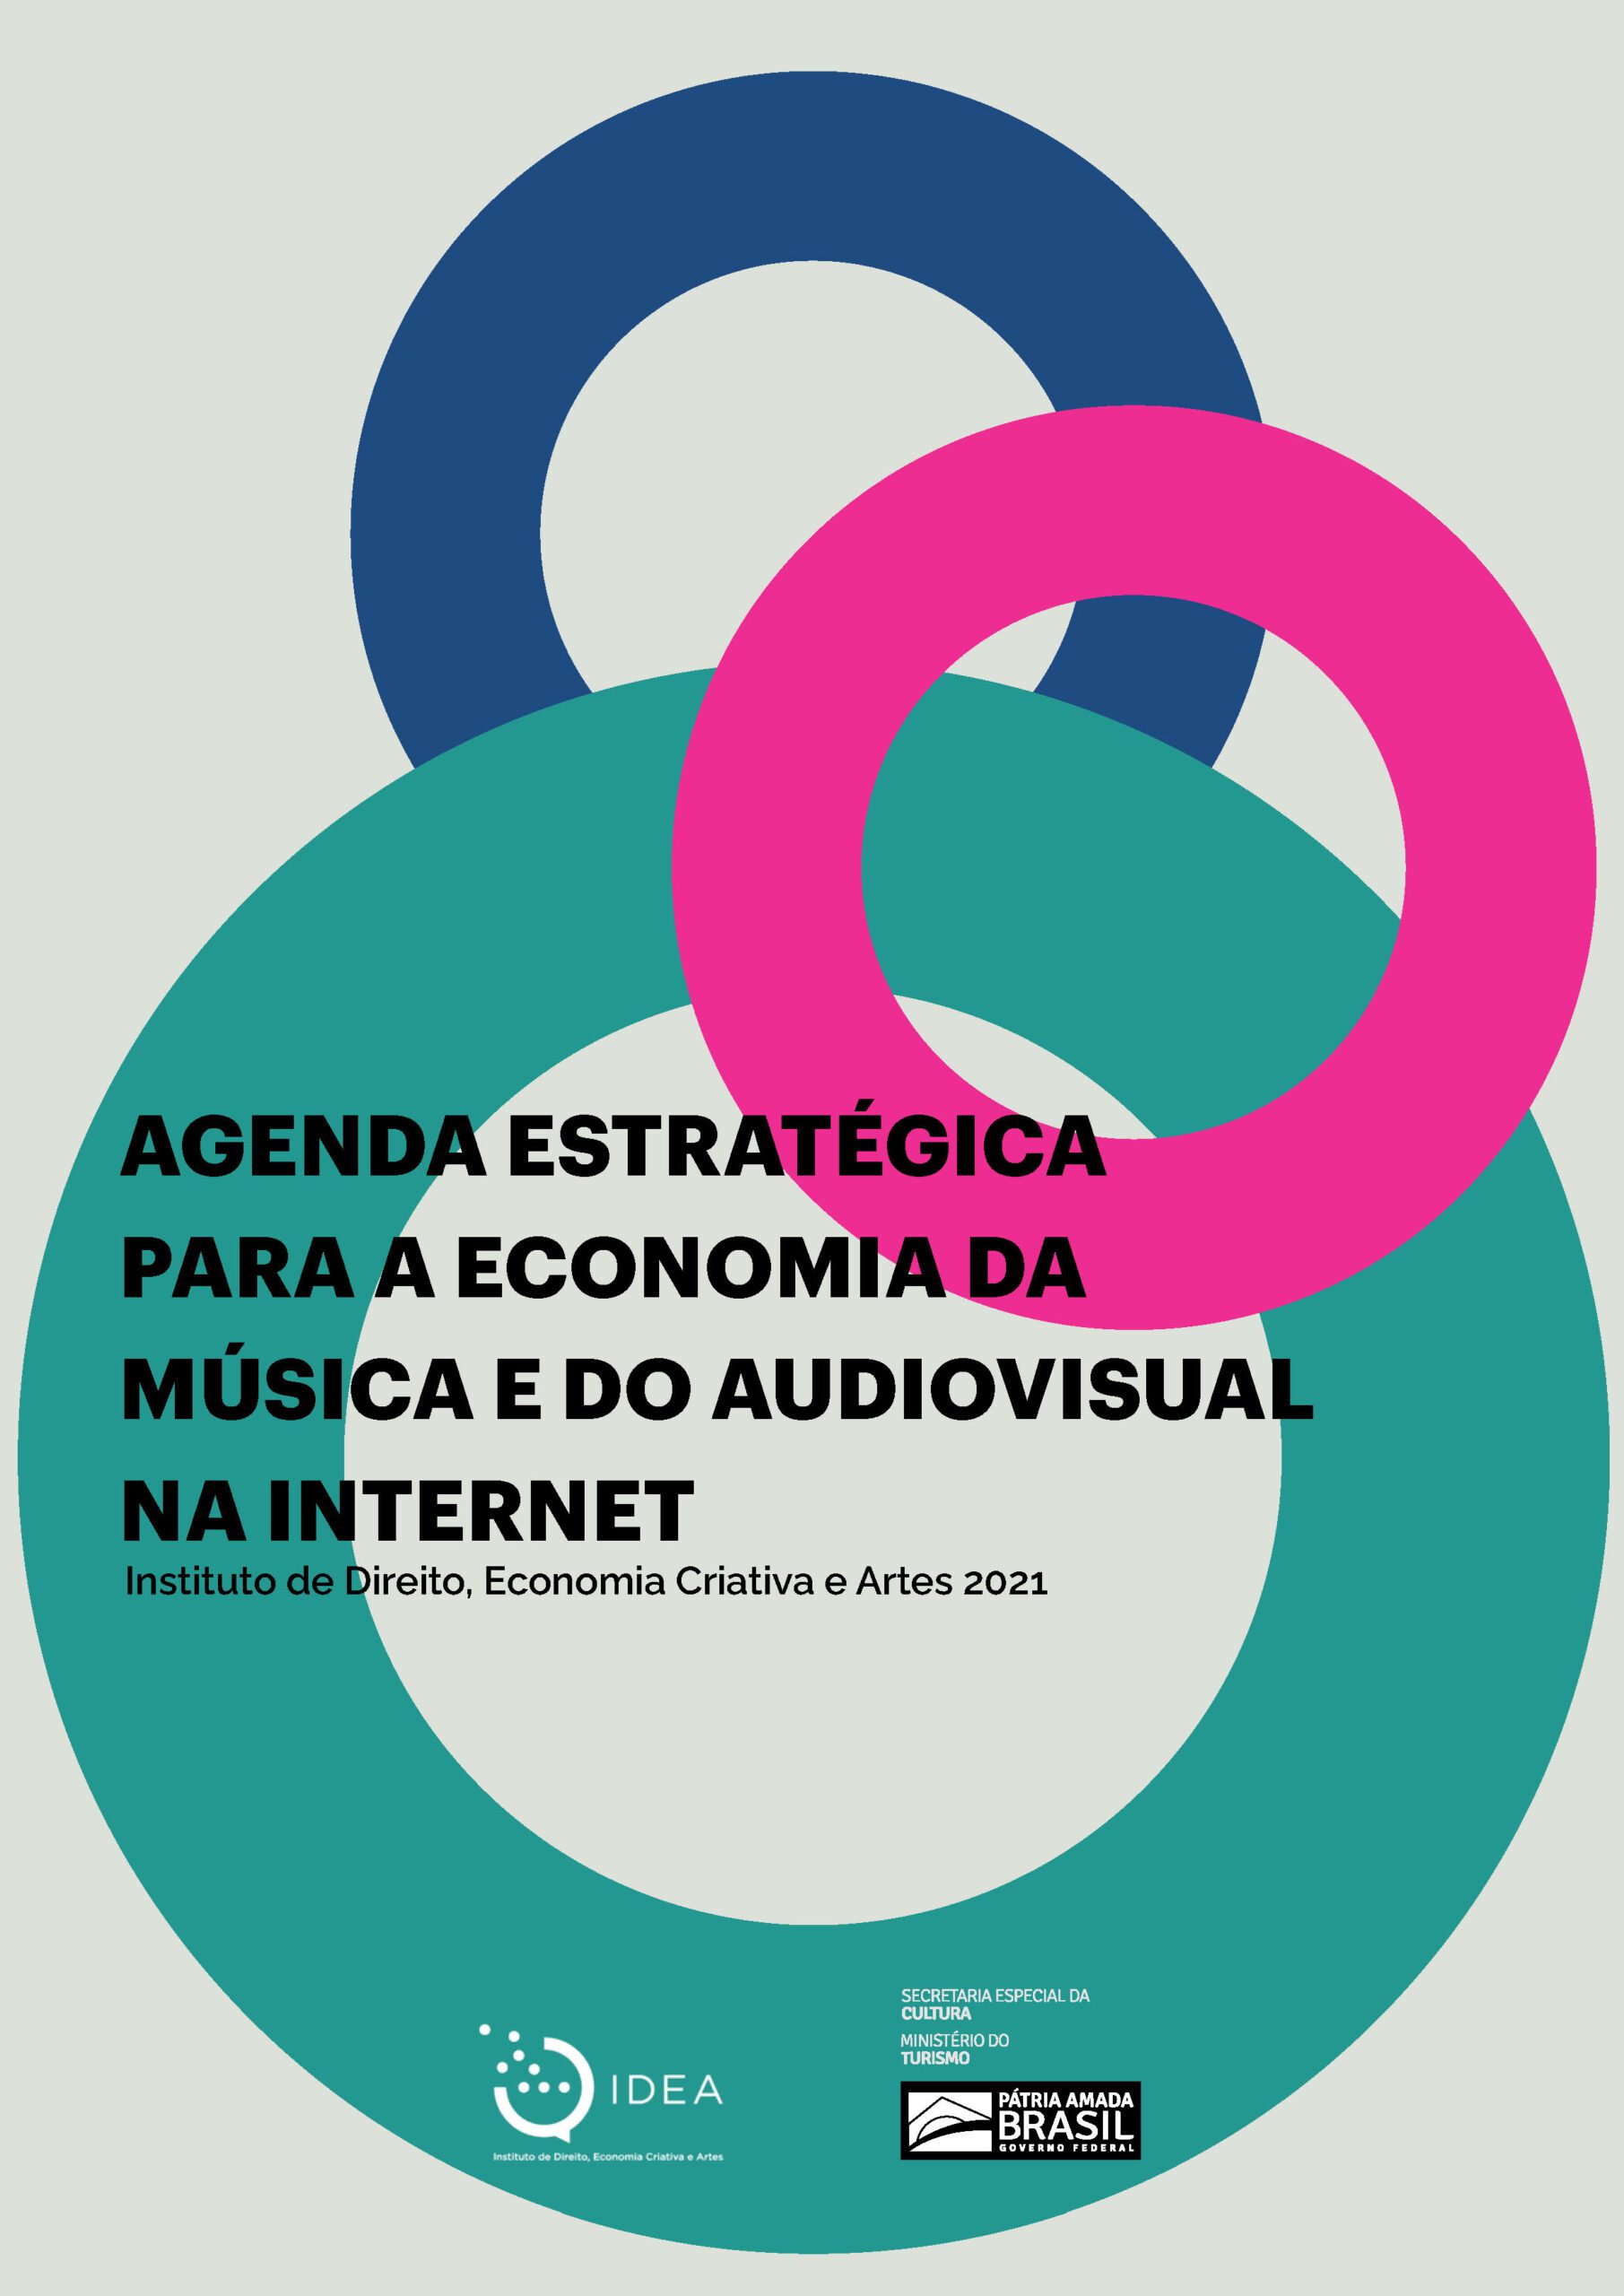 Agenda Estratégica para economia da música e do audiovisual na Internet